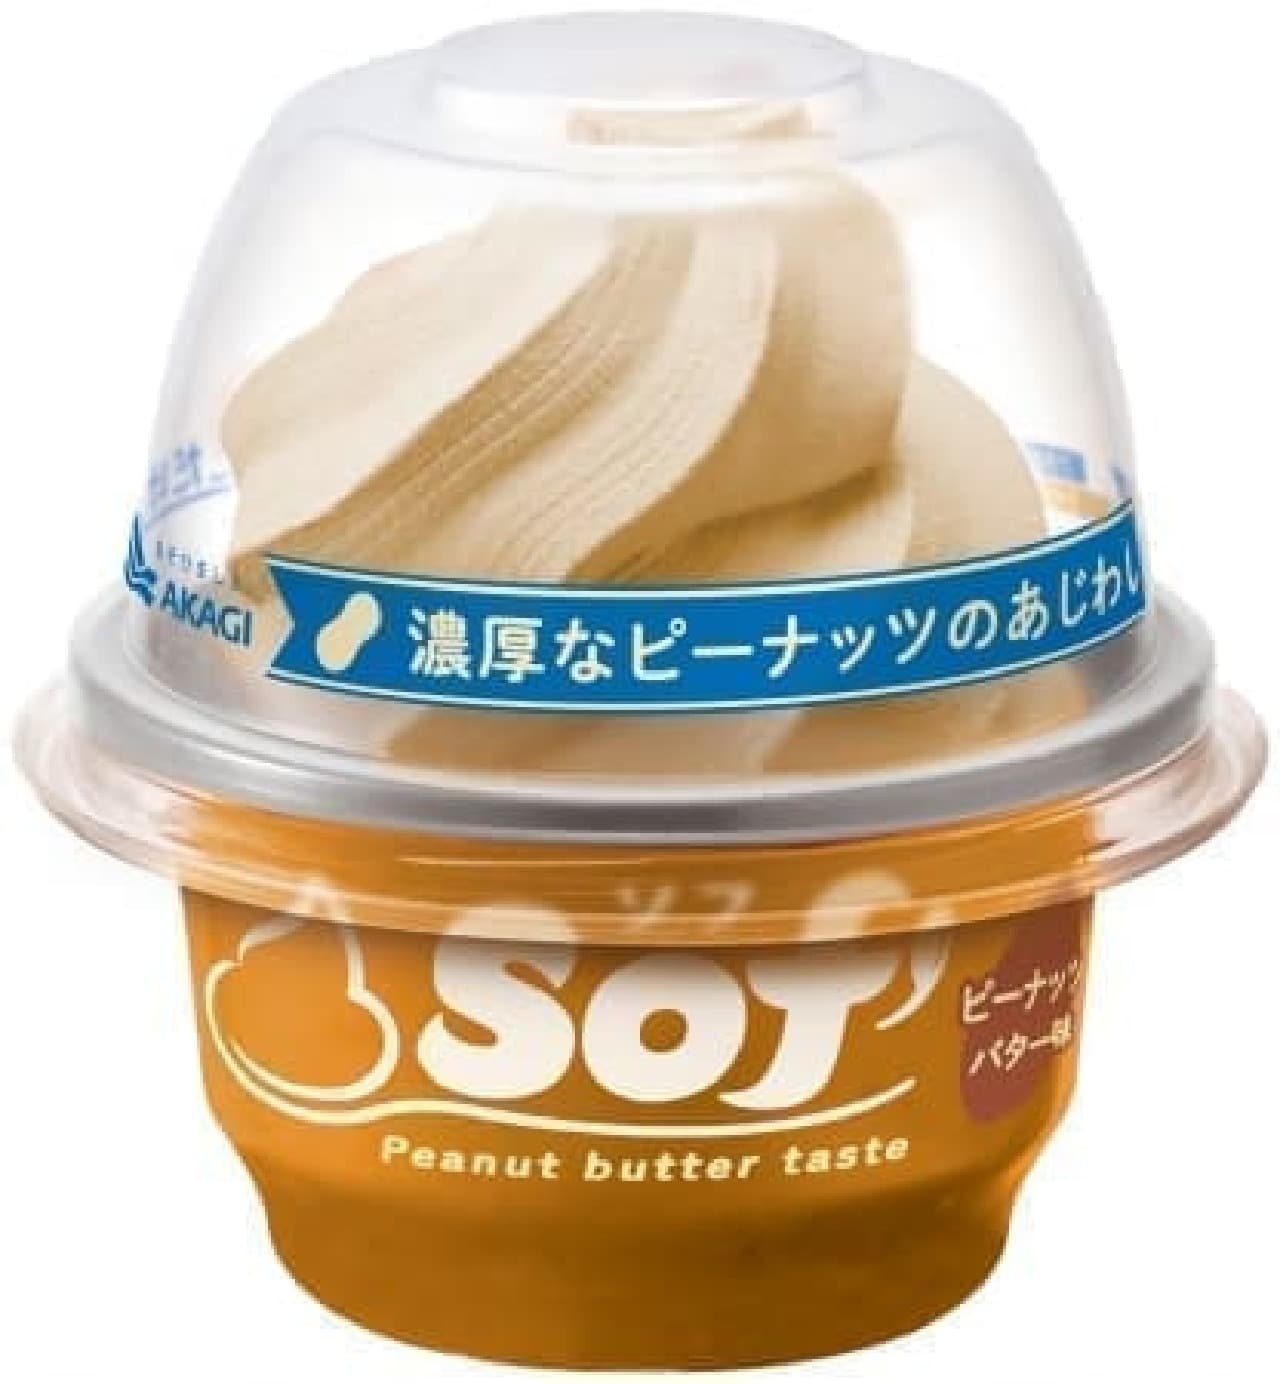 Soft peanut butter